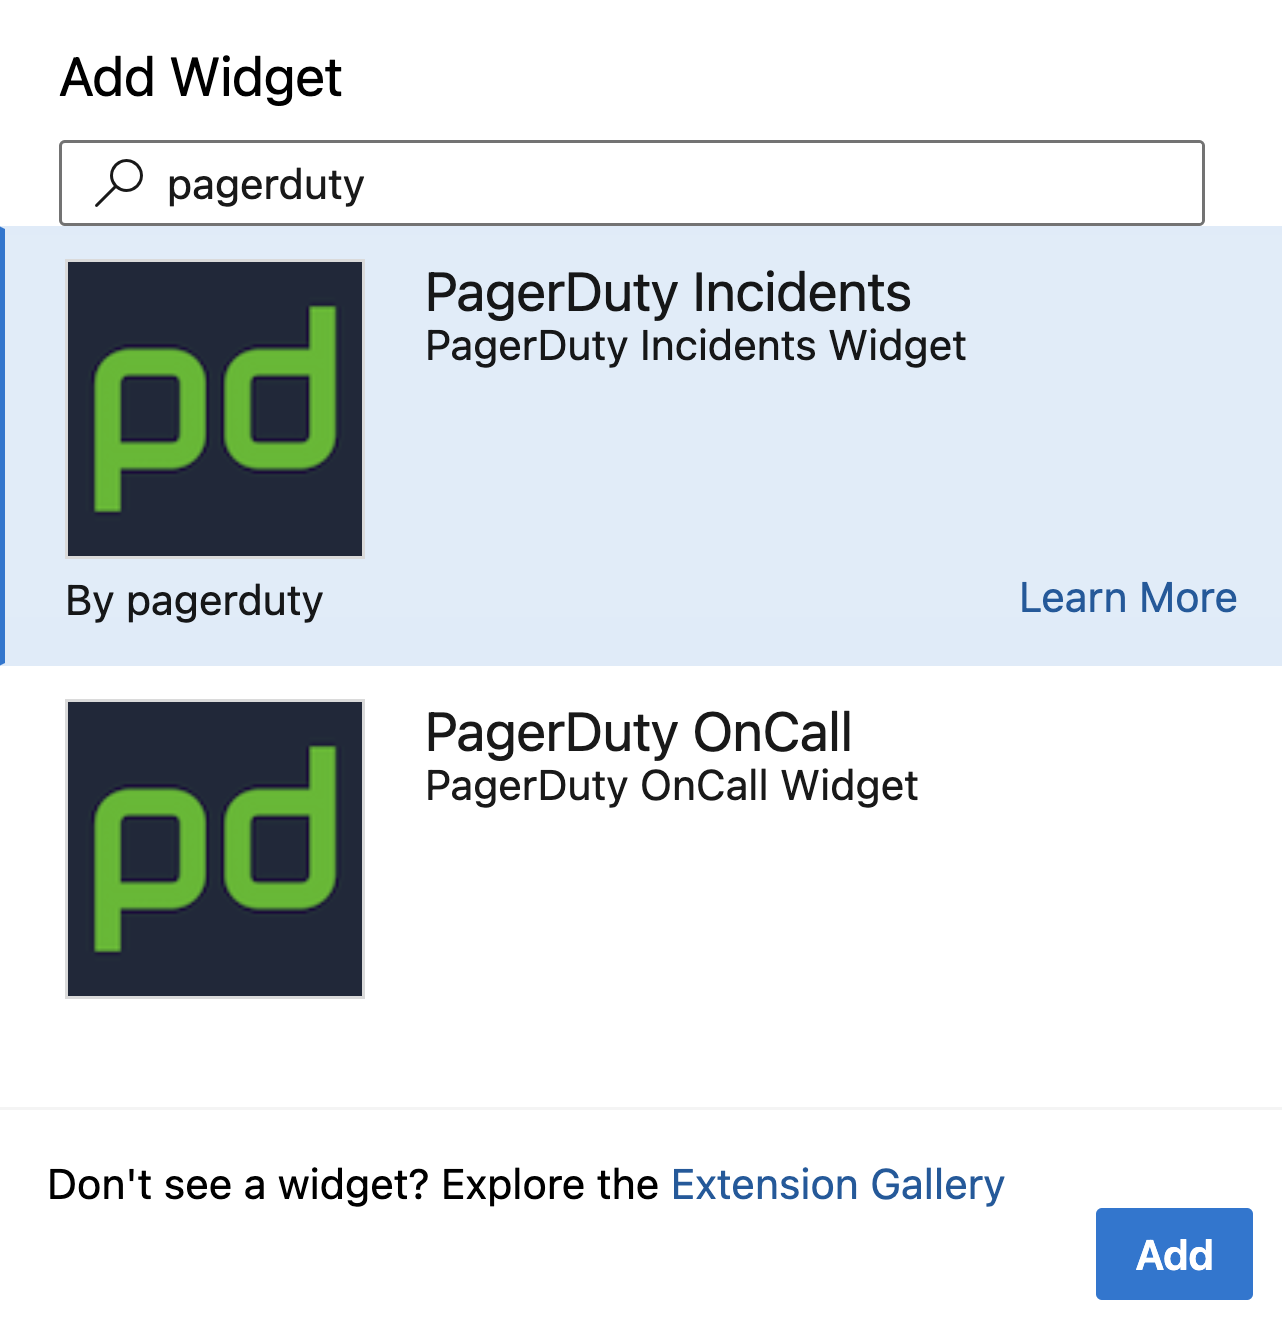 PagerDuty widgets